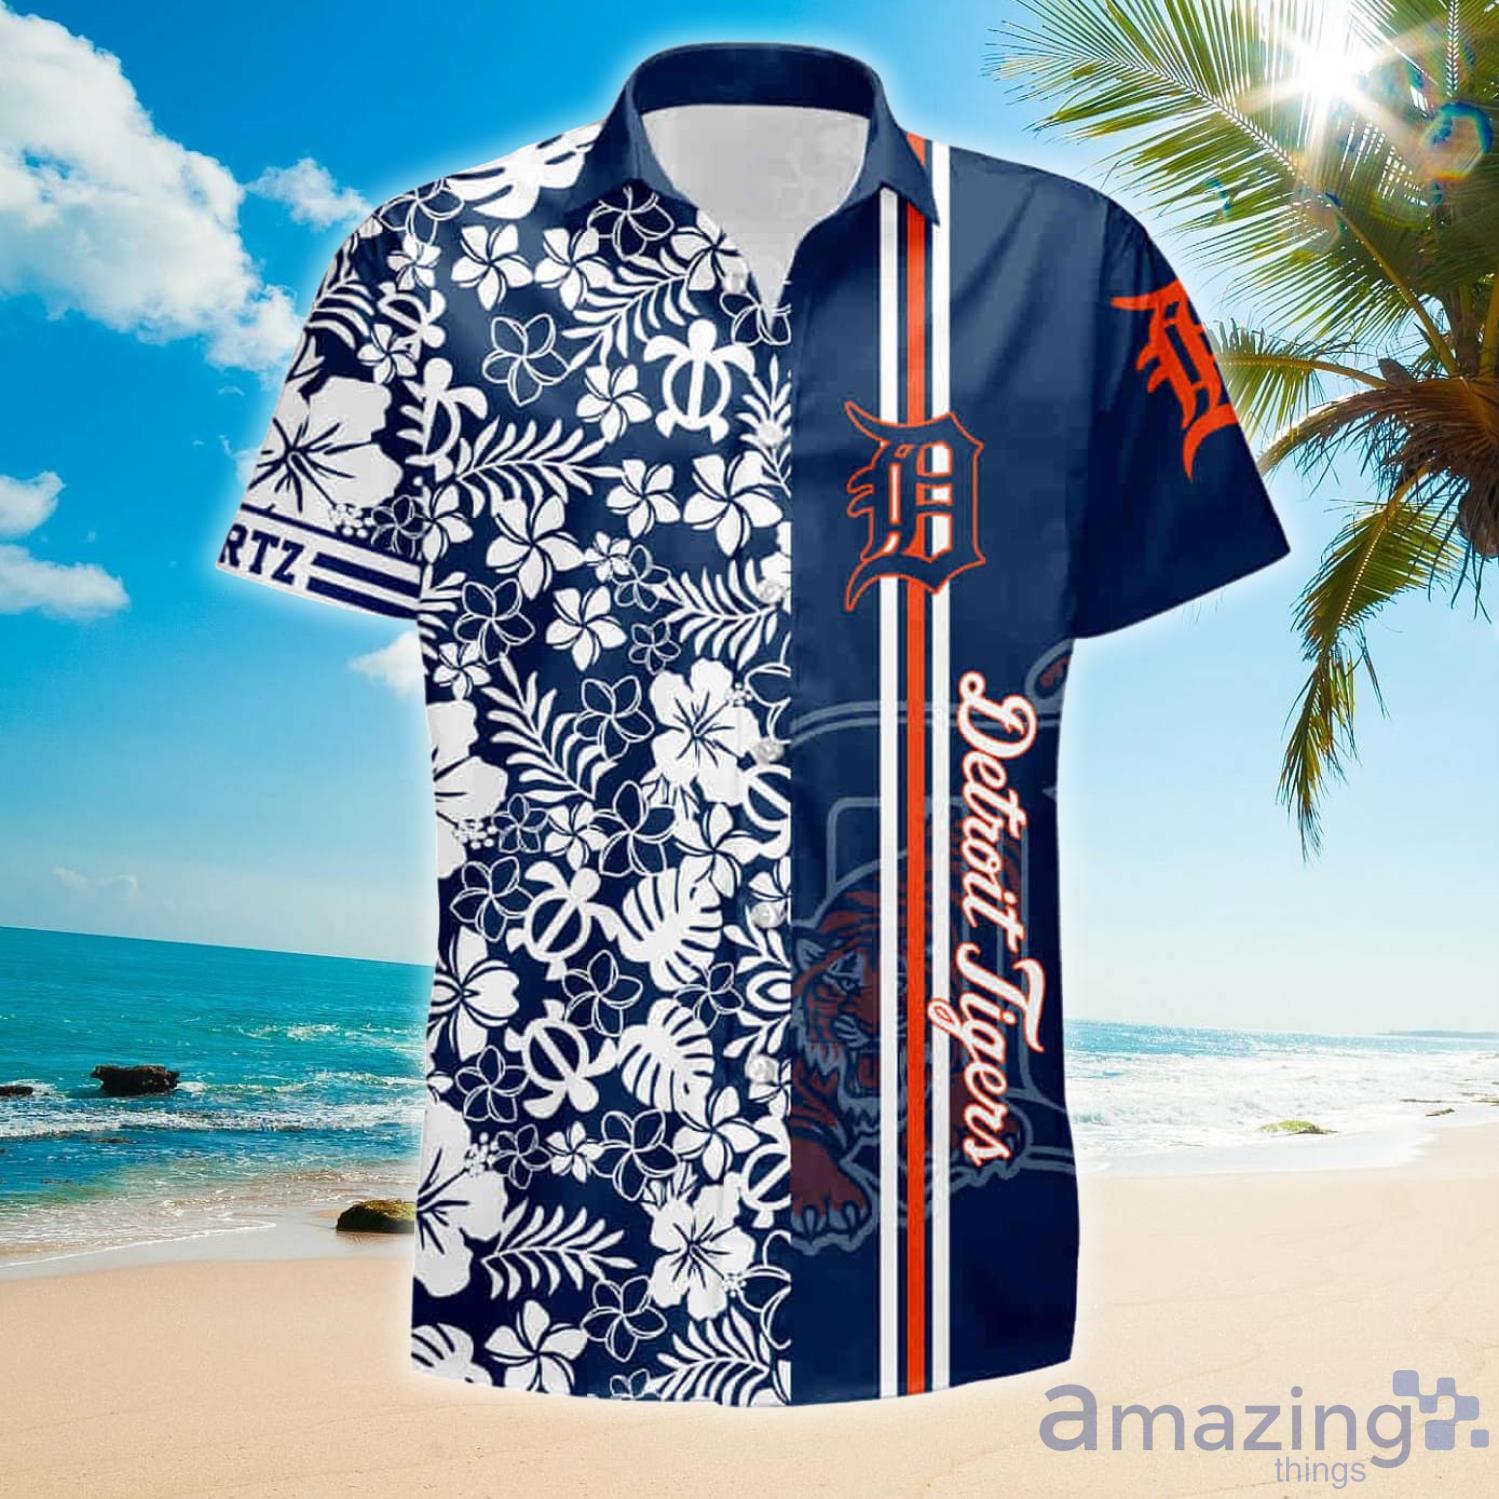 MLB Detroit Tigers Baseball Team Hawaiian Shirt And Shorts Summer